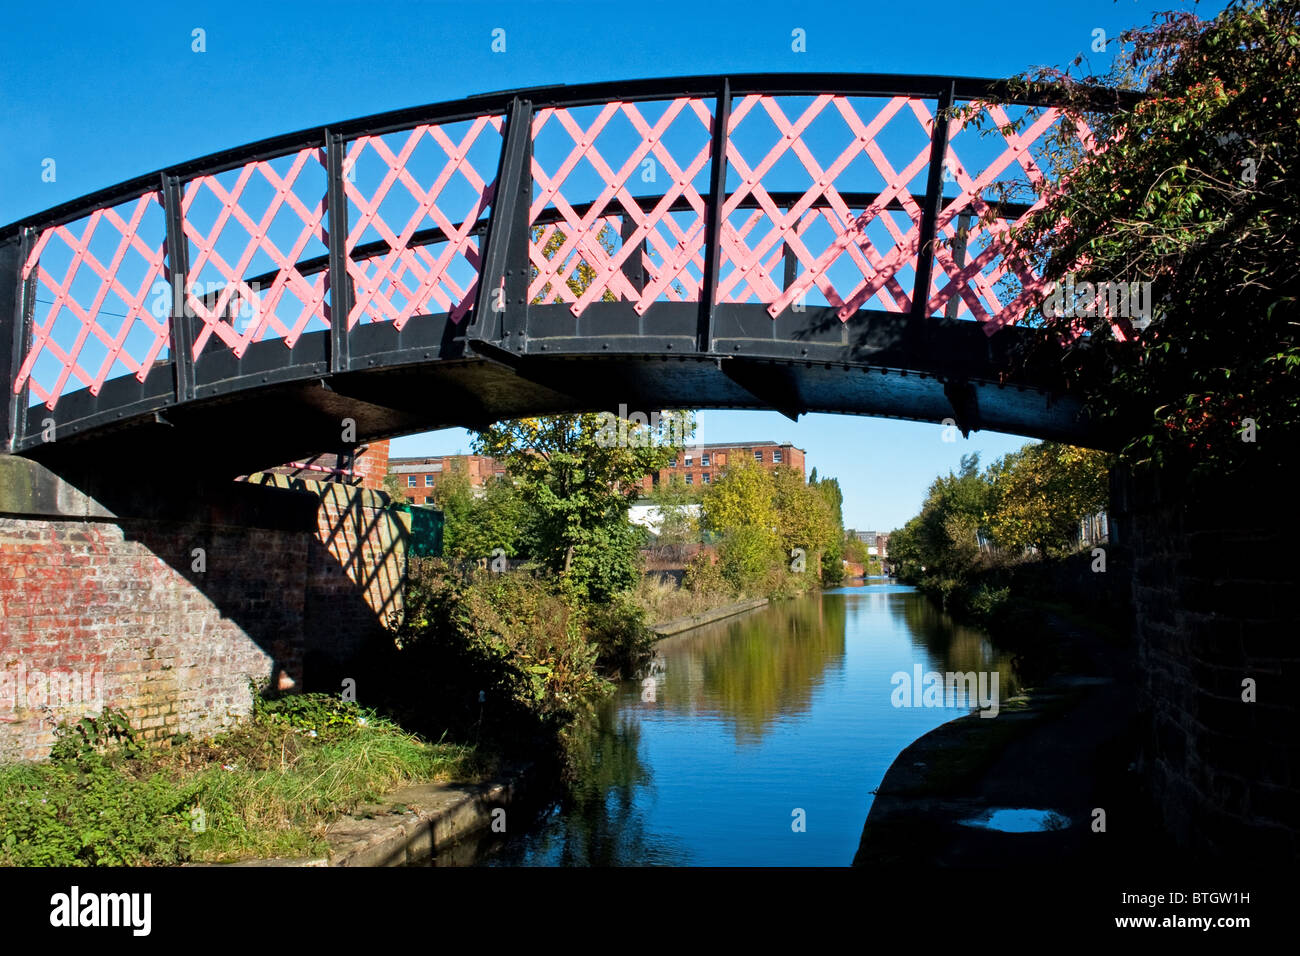 Jeremy Brook wrought iron footbridge, Ashton canal, Ashton under Lyne, Tameside, Greater Manchester, England, UK Stock Photo